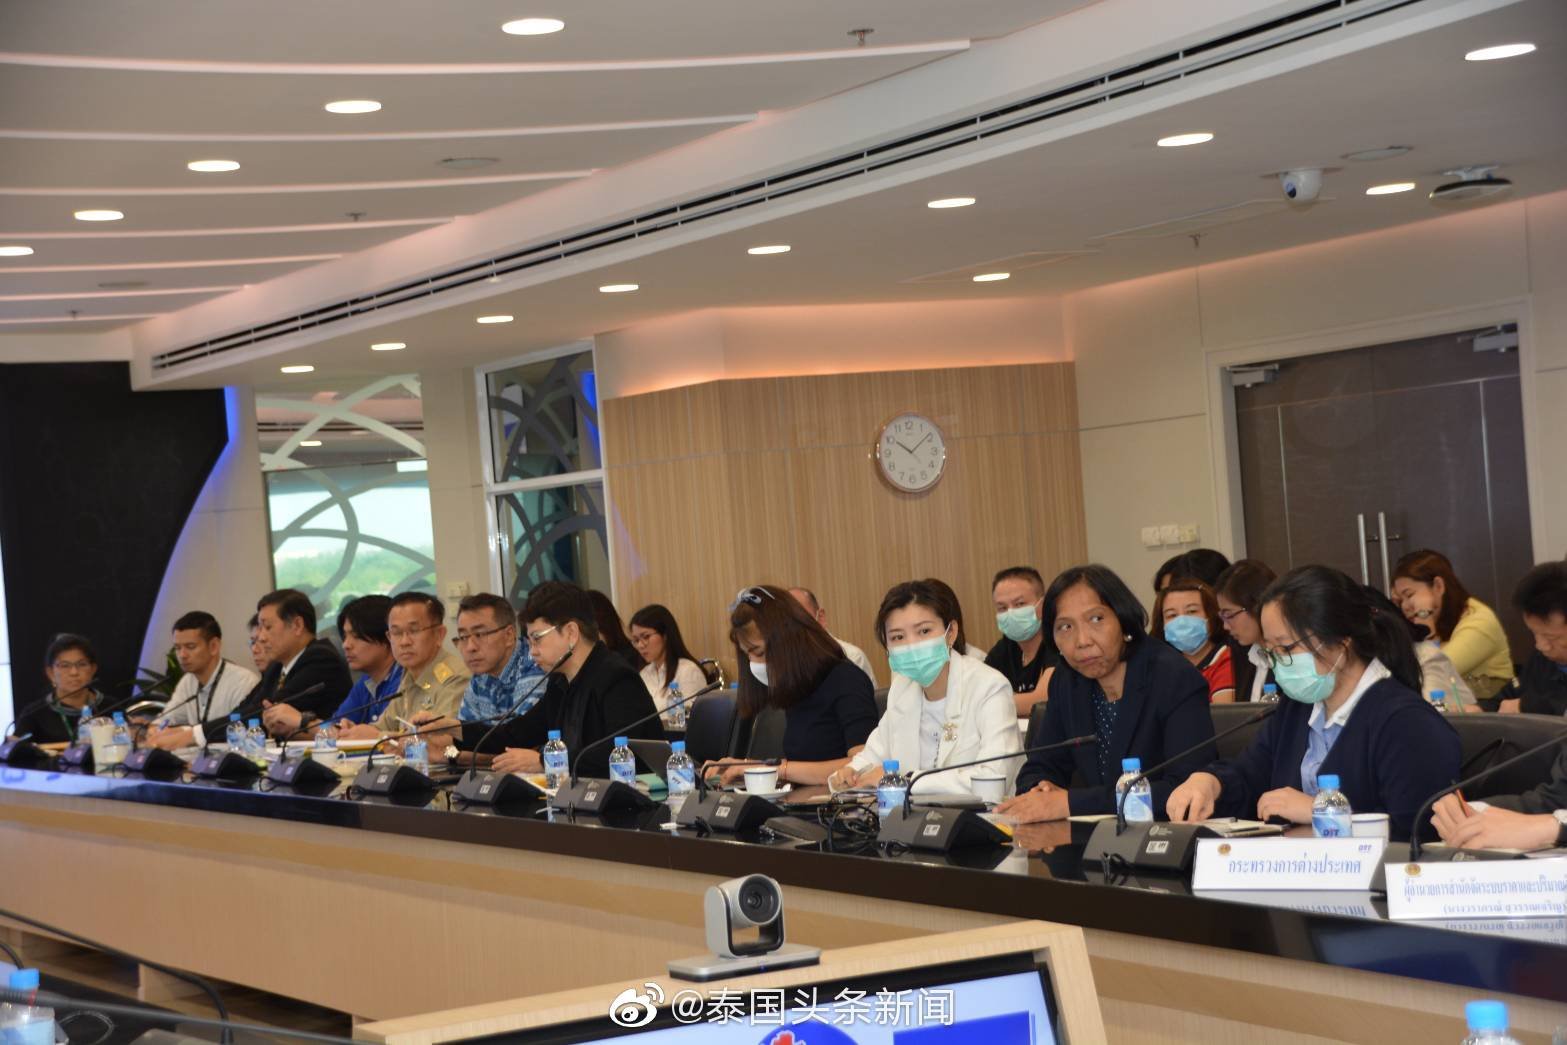 13 กุมภาพันธ์ 2020 คุณหลุ่ย แซ่กั๊ว ได้เข้าร่วมการประชุมการส่งออกหน้ากากของกรมการค้าภายใน กระทรวงพาณิชย์ ประเทศไทย